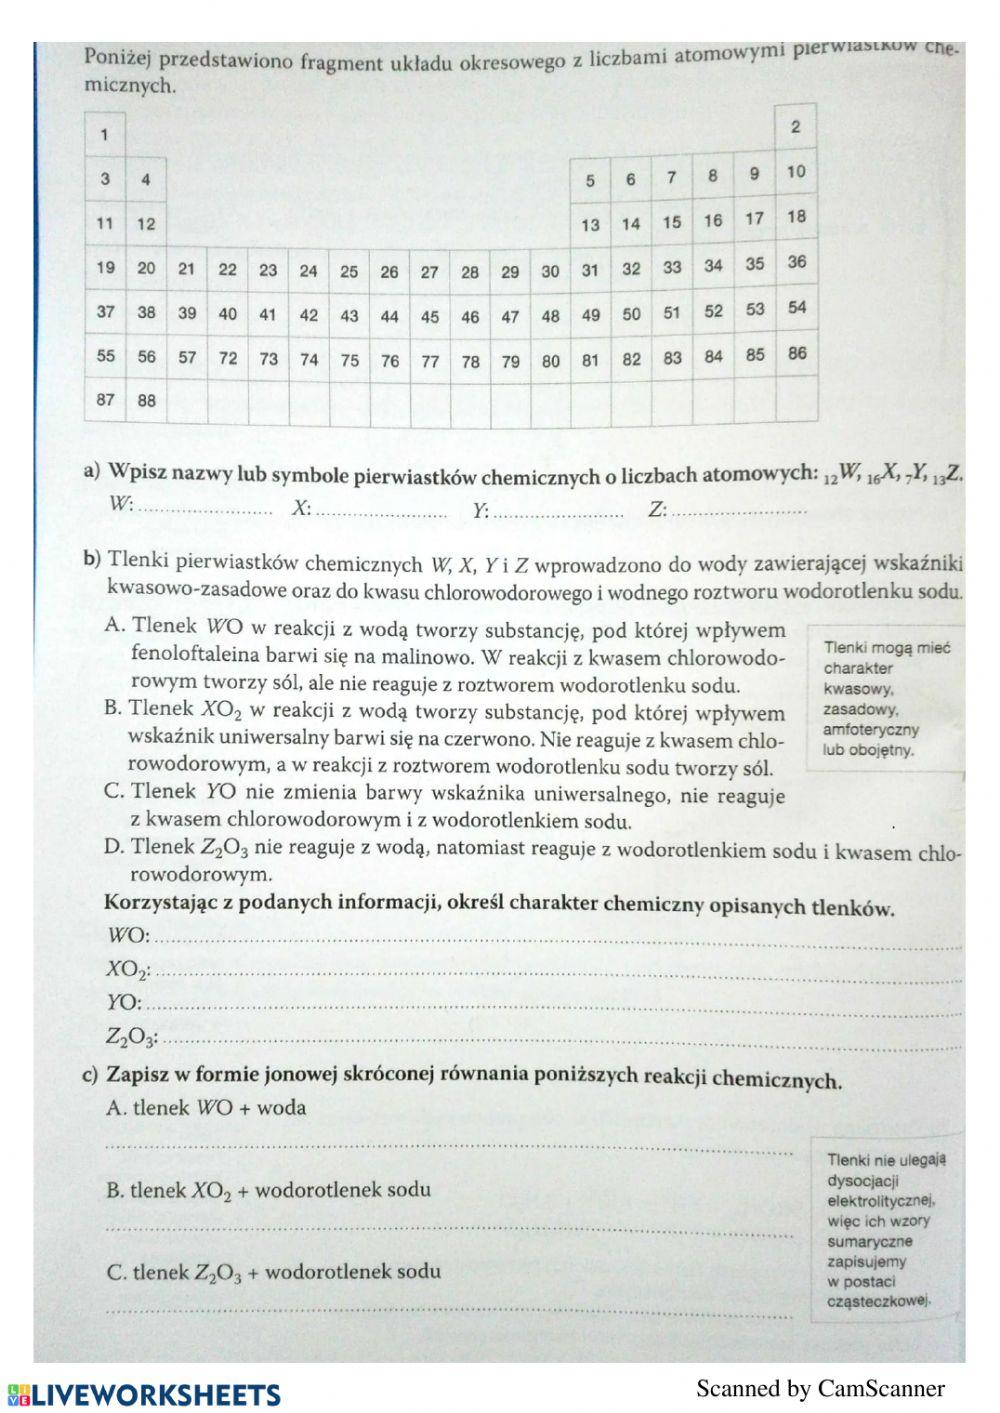 tlenki-wodorotlenki-wodorki- cz.1